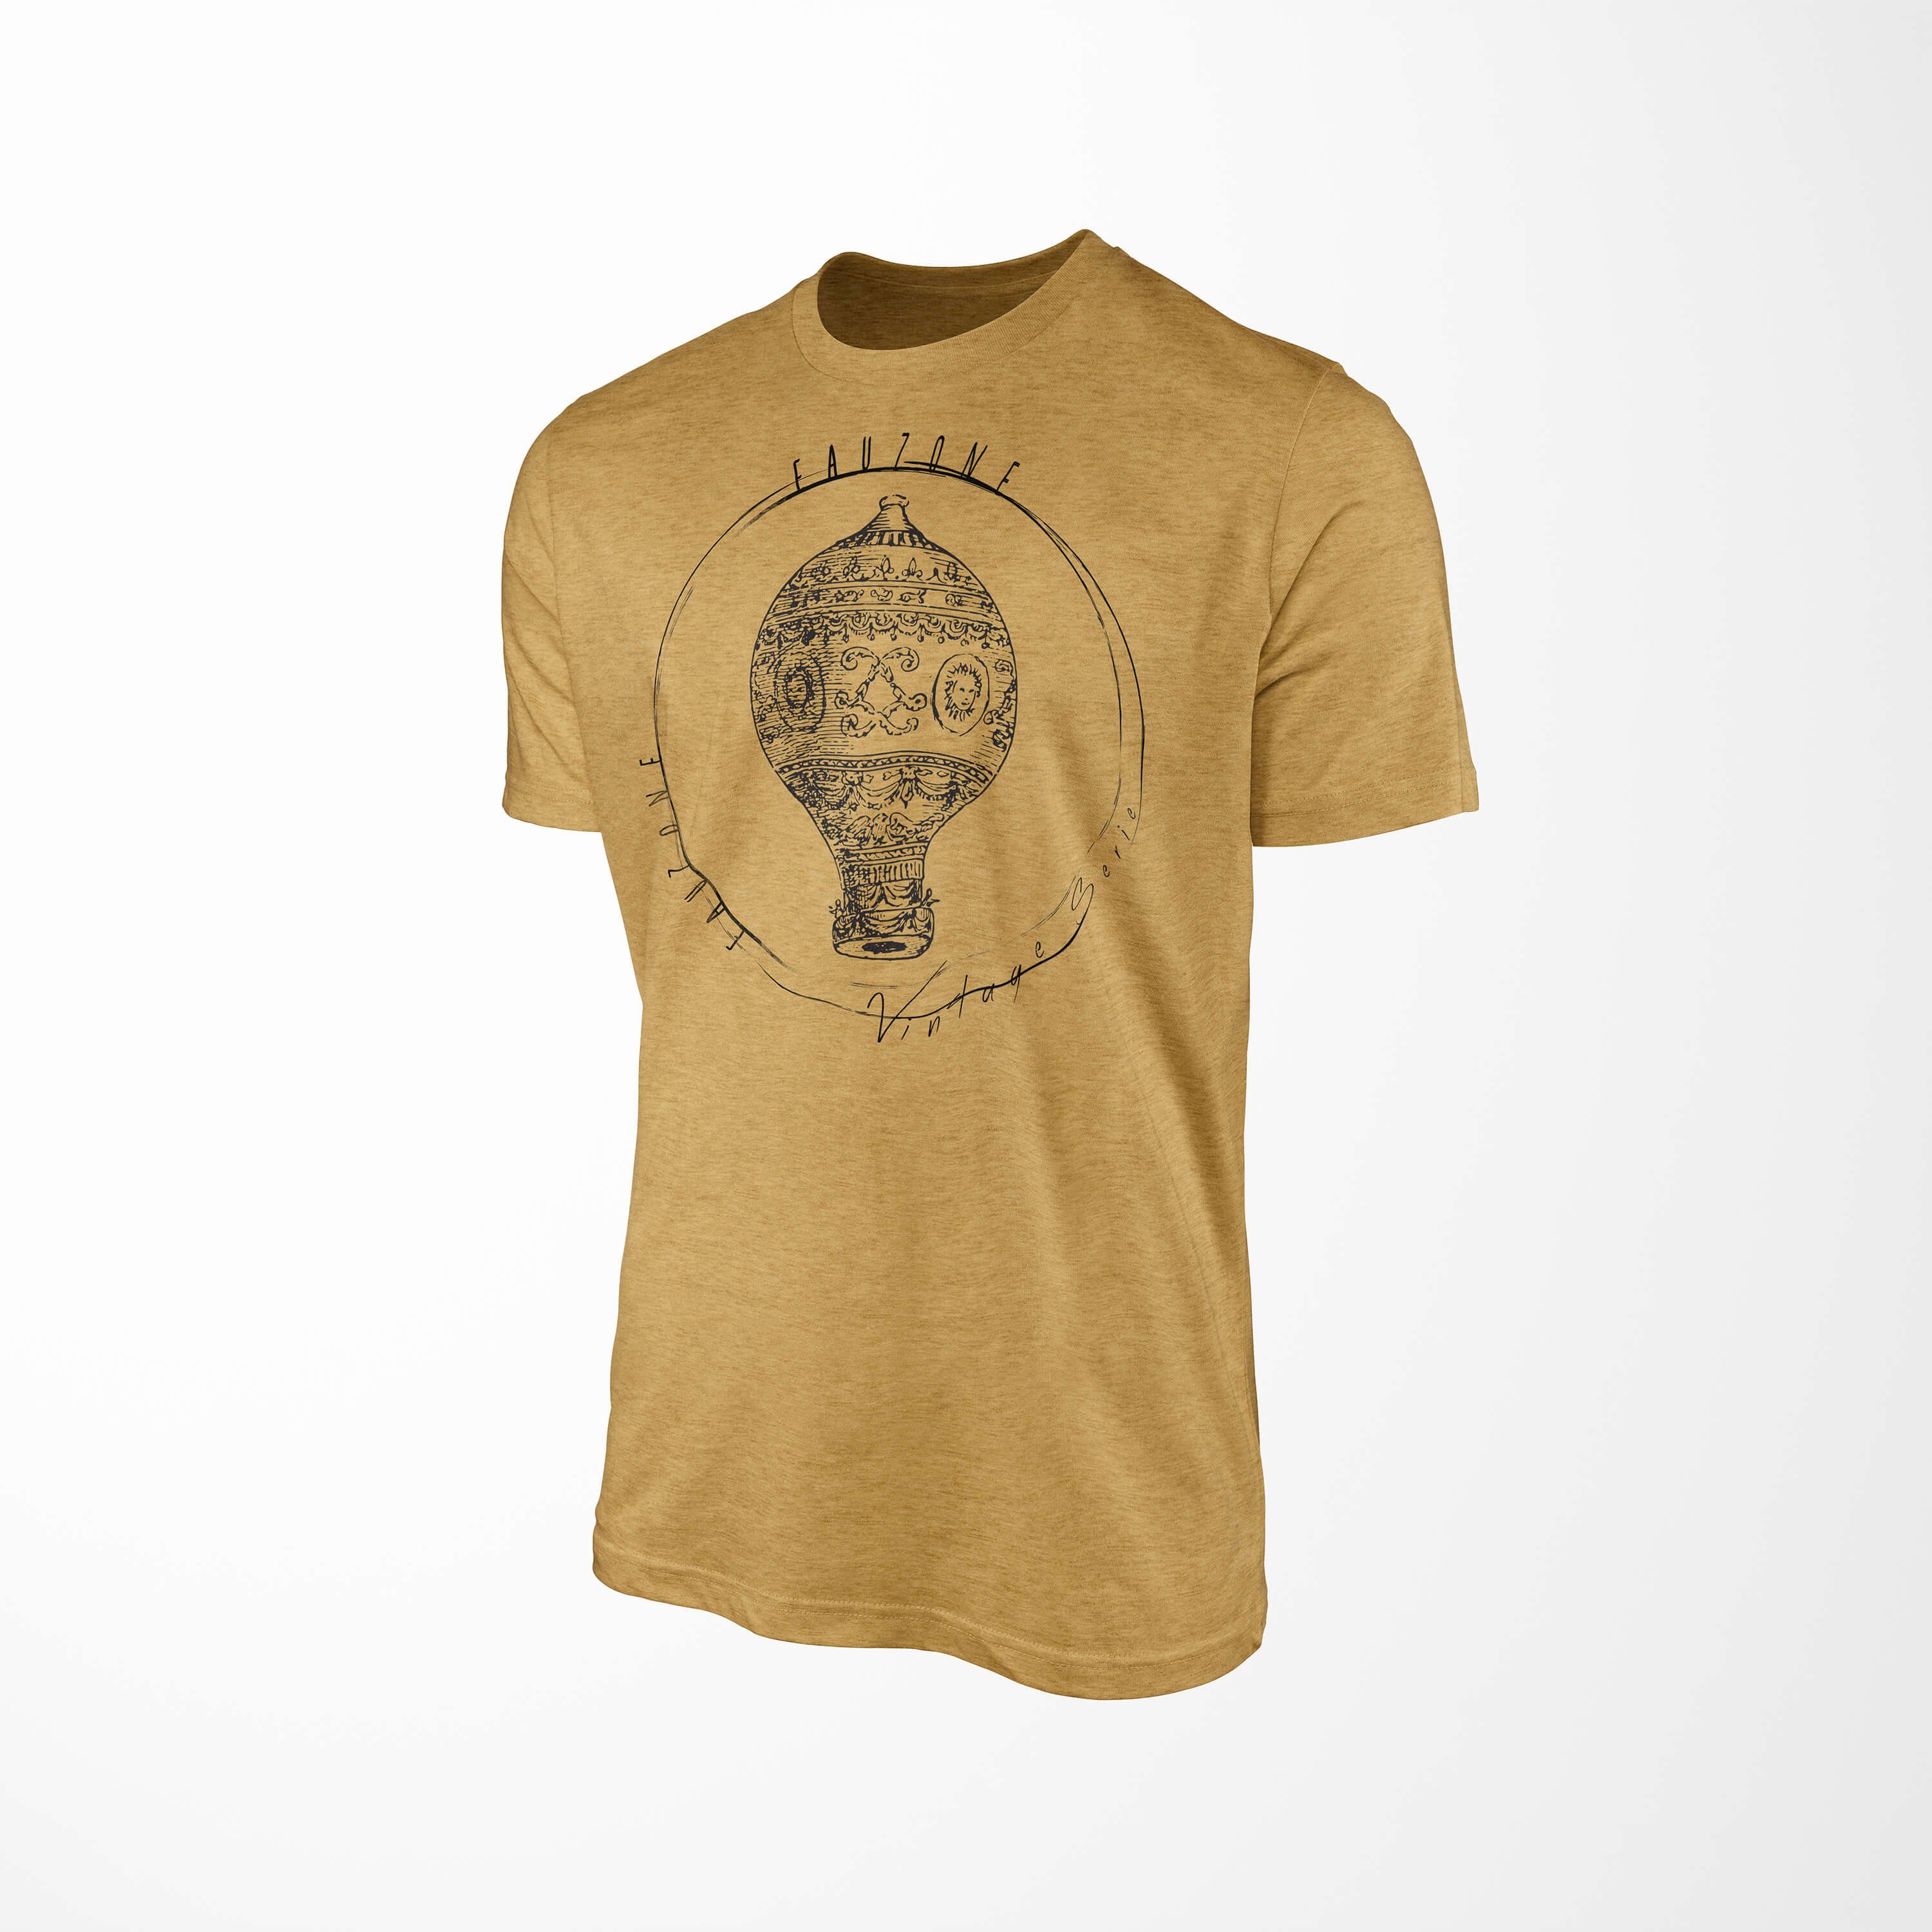 Sinus Art T-Shirt Vintage Herren Heizluftballon Antique Gold T-Shirt